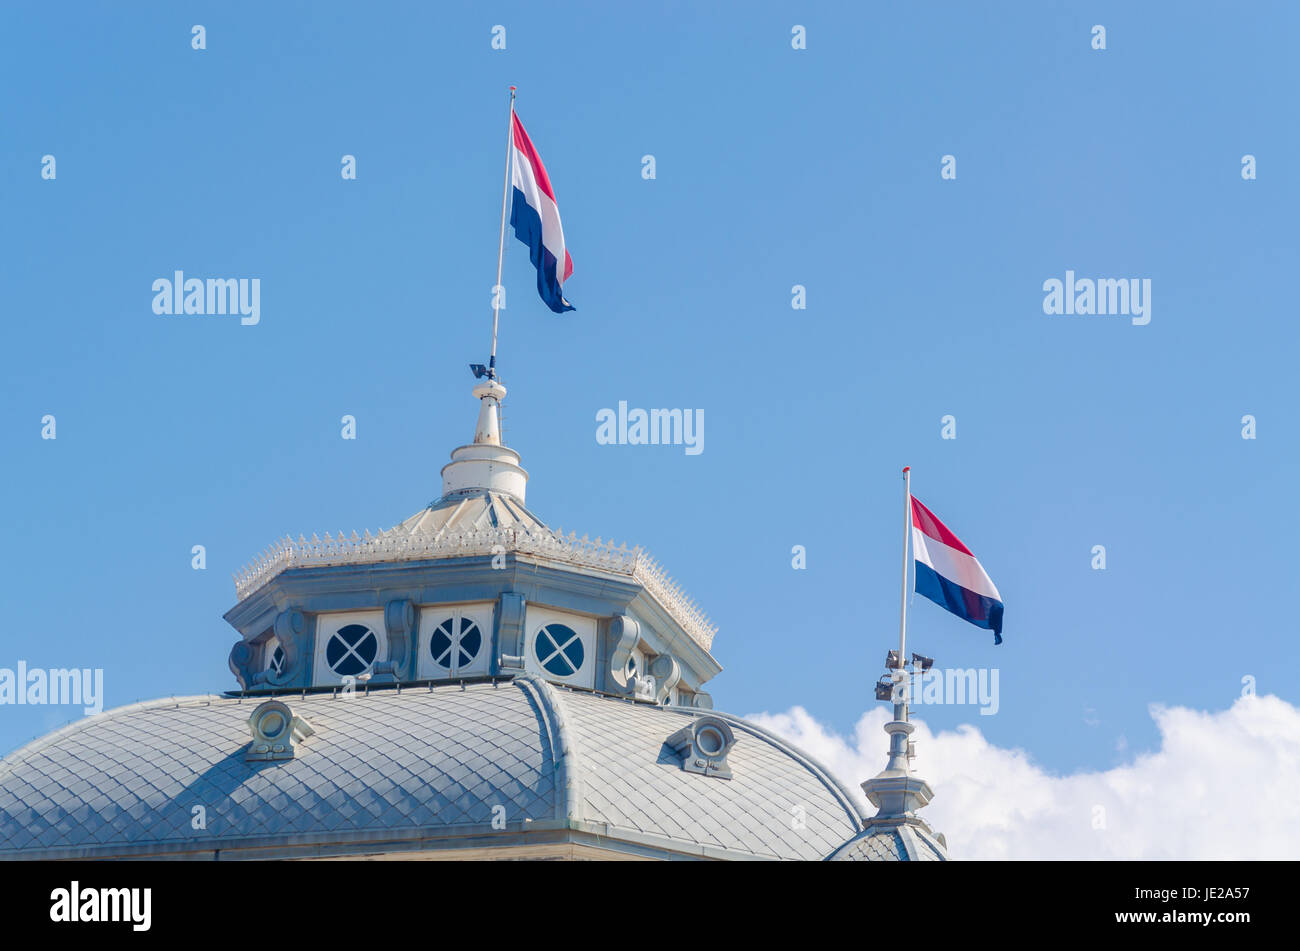 Dach Giebel Ansicht mit Fahnen des Kurhaus in Scheveningen Niederlande, Holland vor einem blauen Himmel. Stock Photo